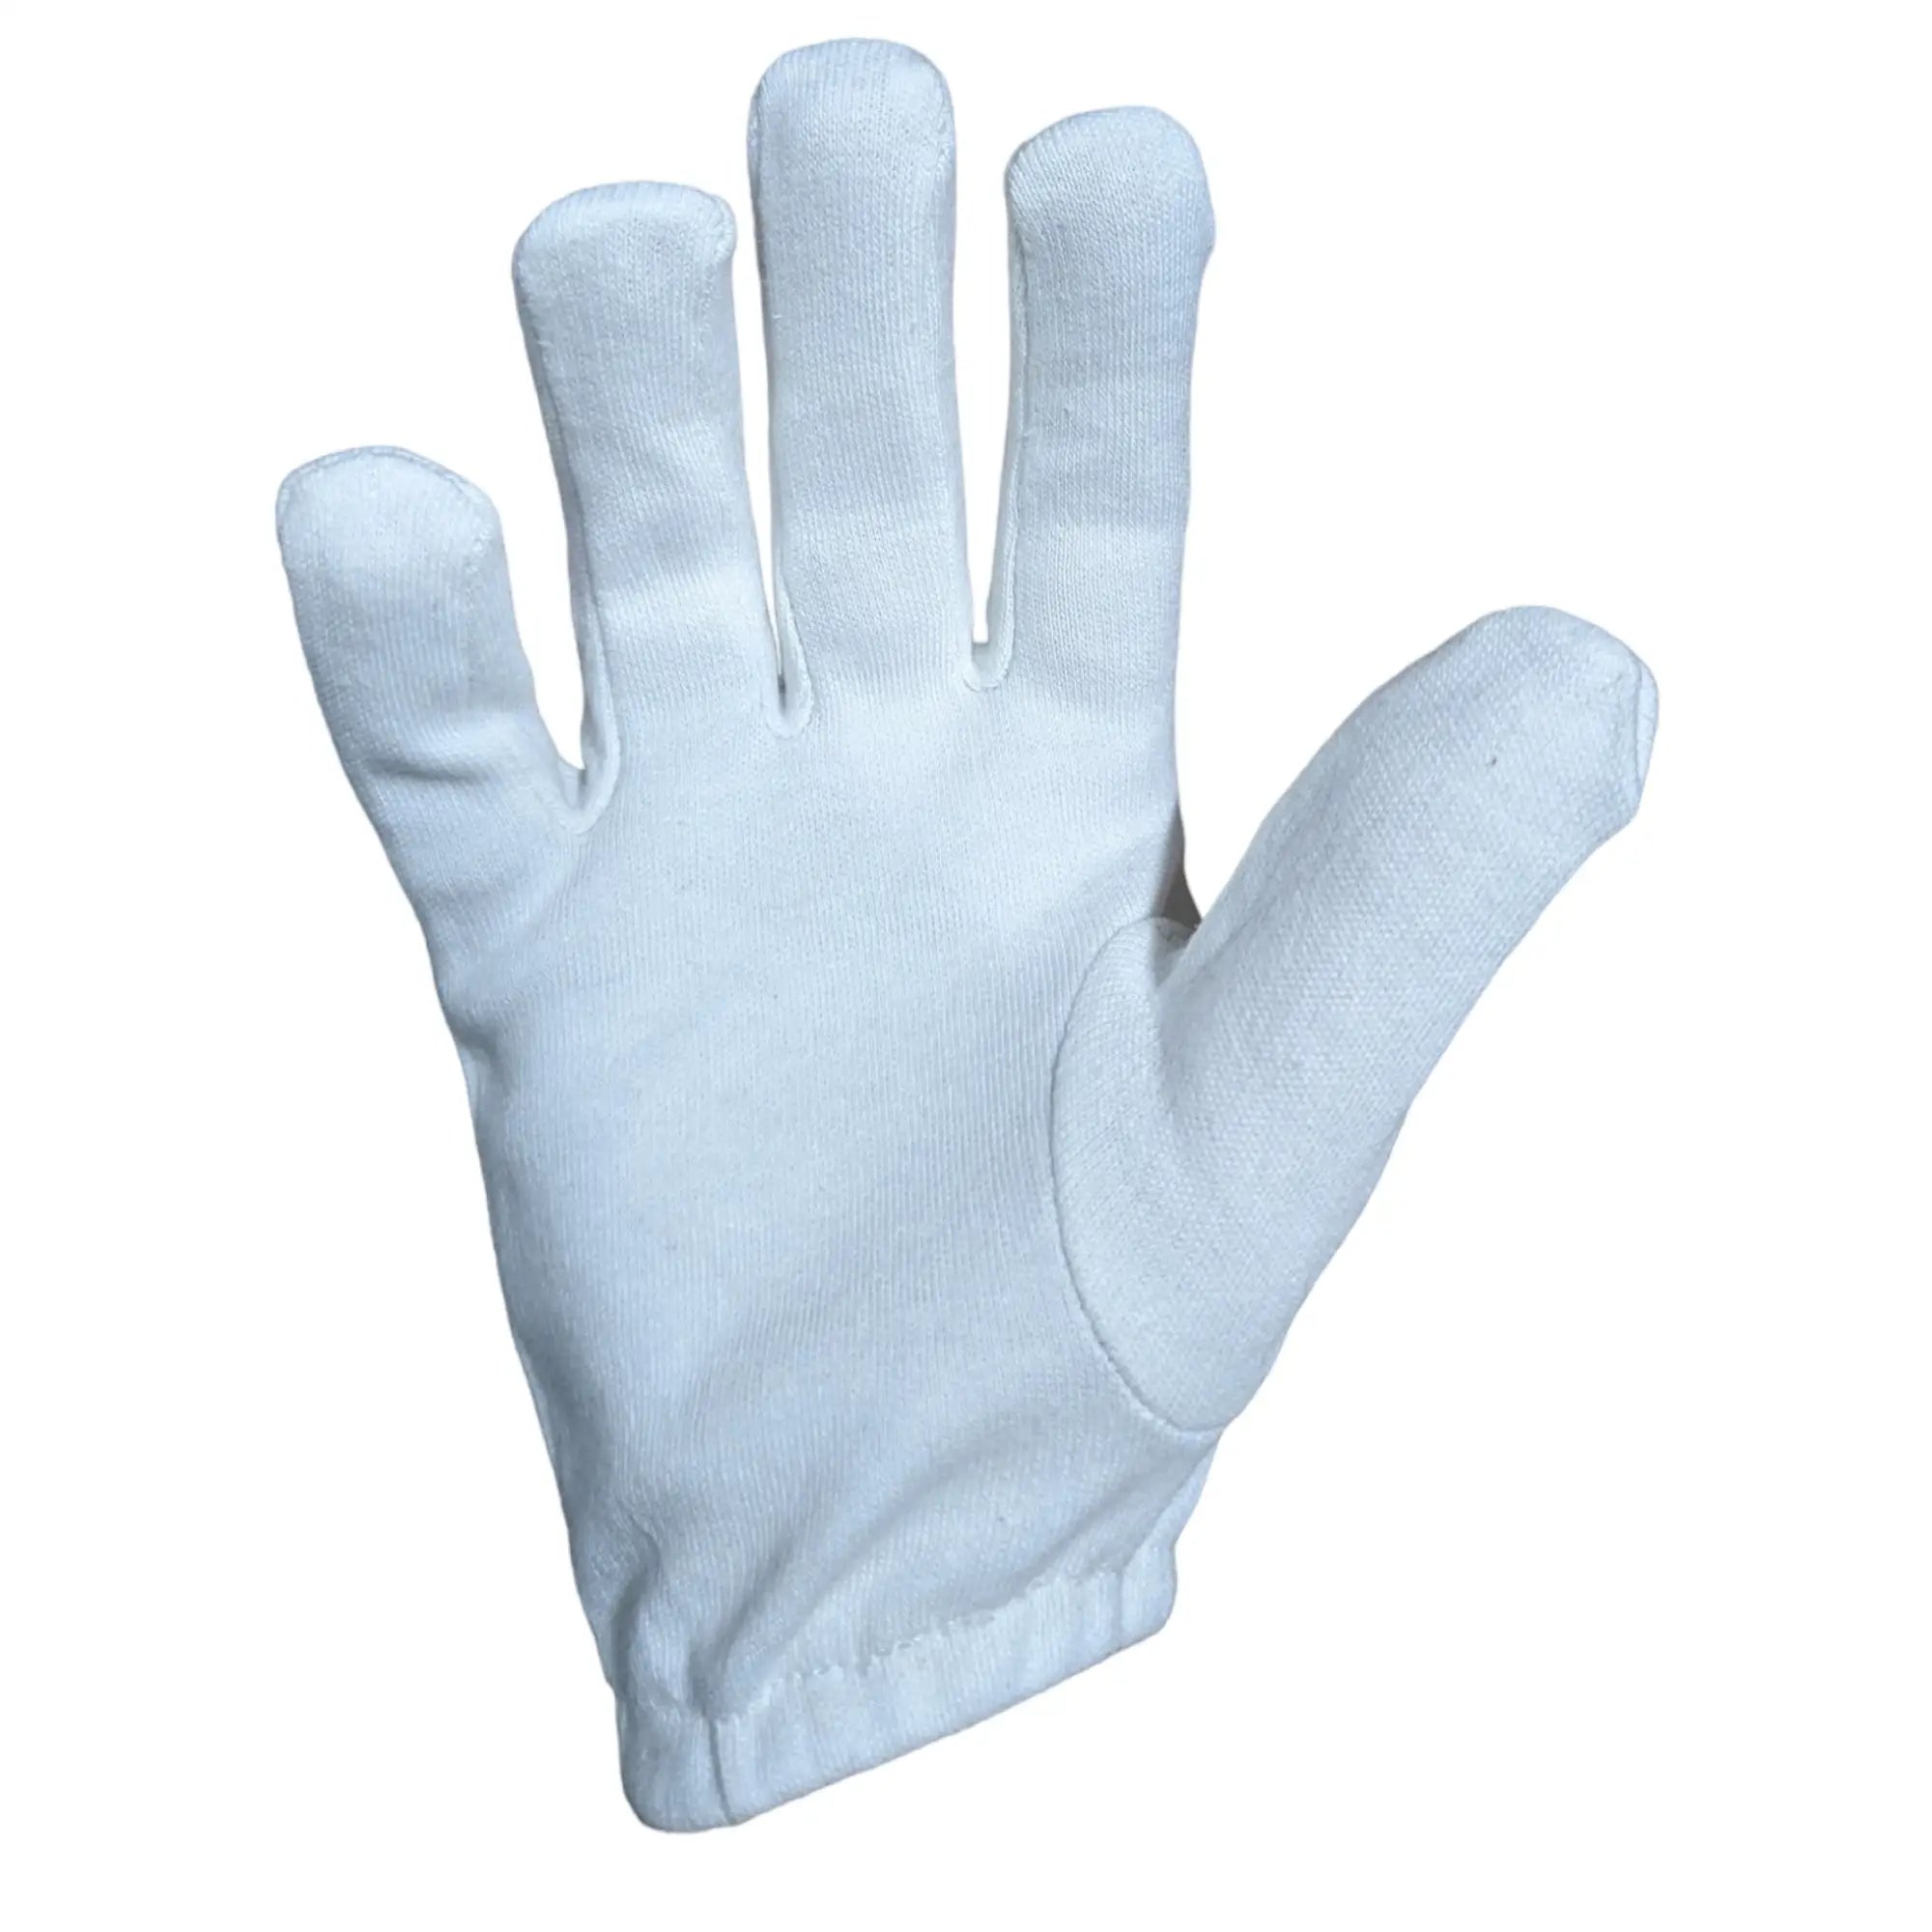 Bratla Cricket Batting Gloves Inner Pro Full Cotton | Premium Quality - GLOVE - BATTING INNER